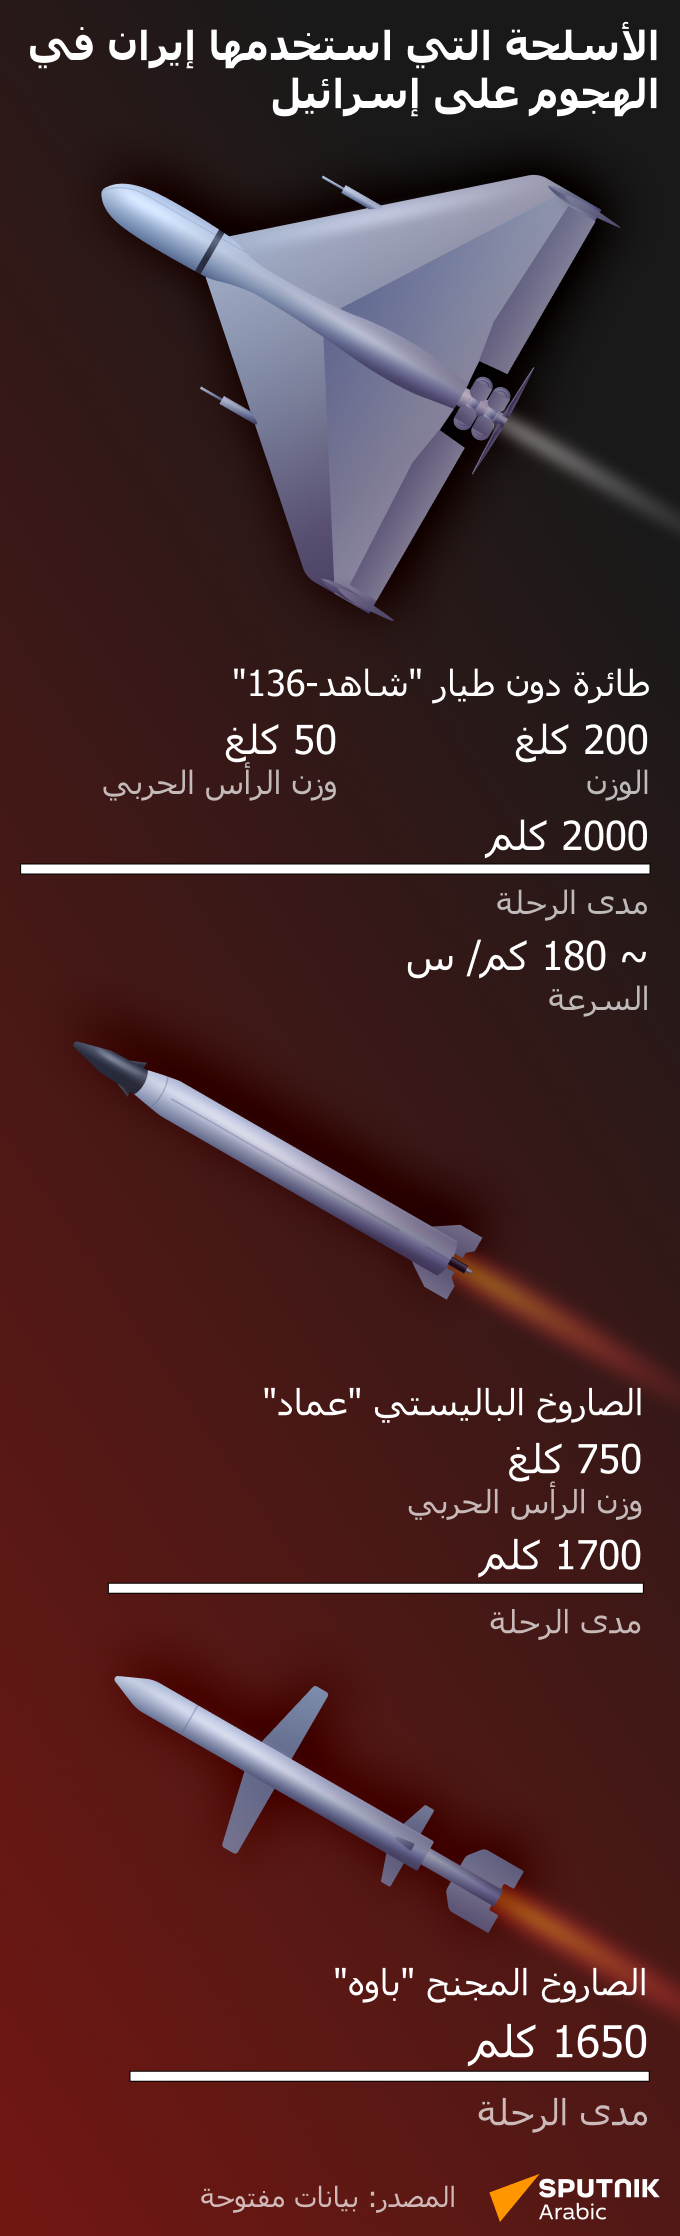 الأسلحة التي استخدمها إيران في الهجوم على إسرائيل - سبوتنيك عربي